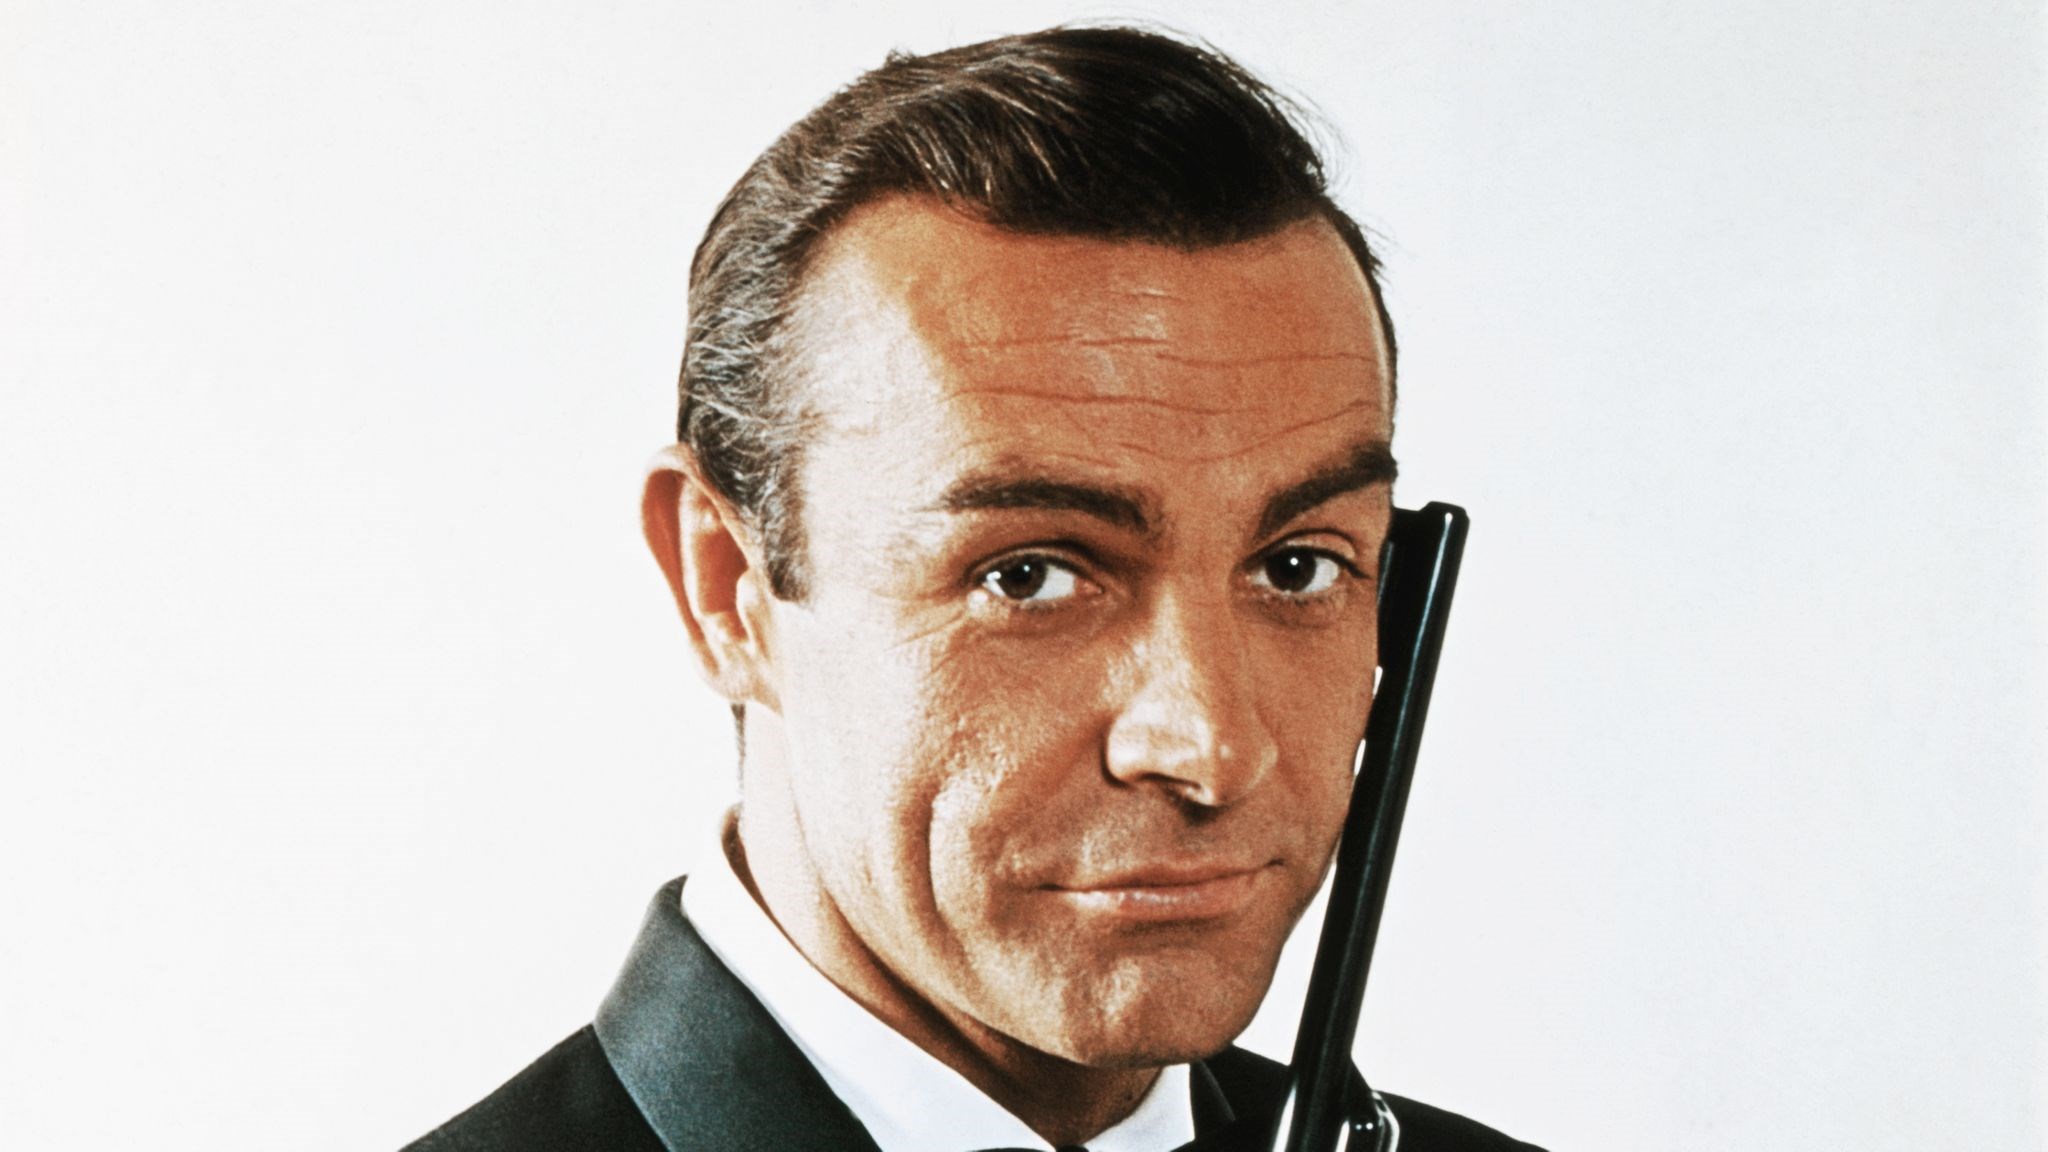 Sinemanın ilk James Bond'u Sean Connery hayatını kaybetti